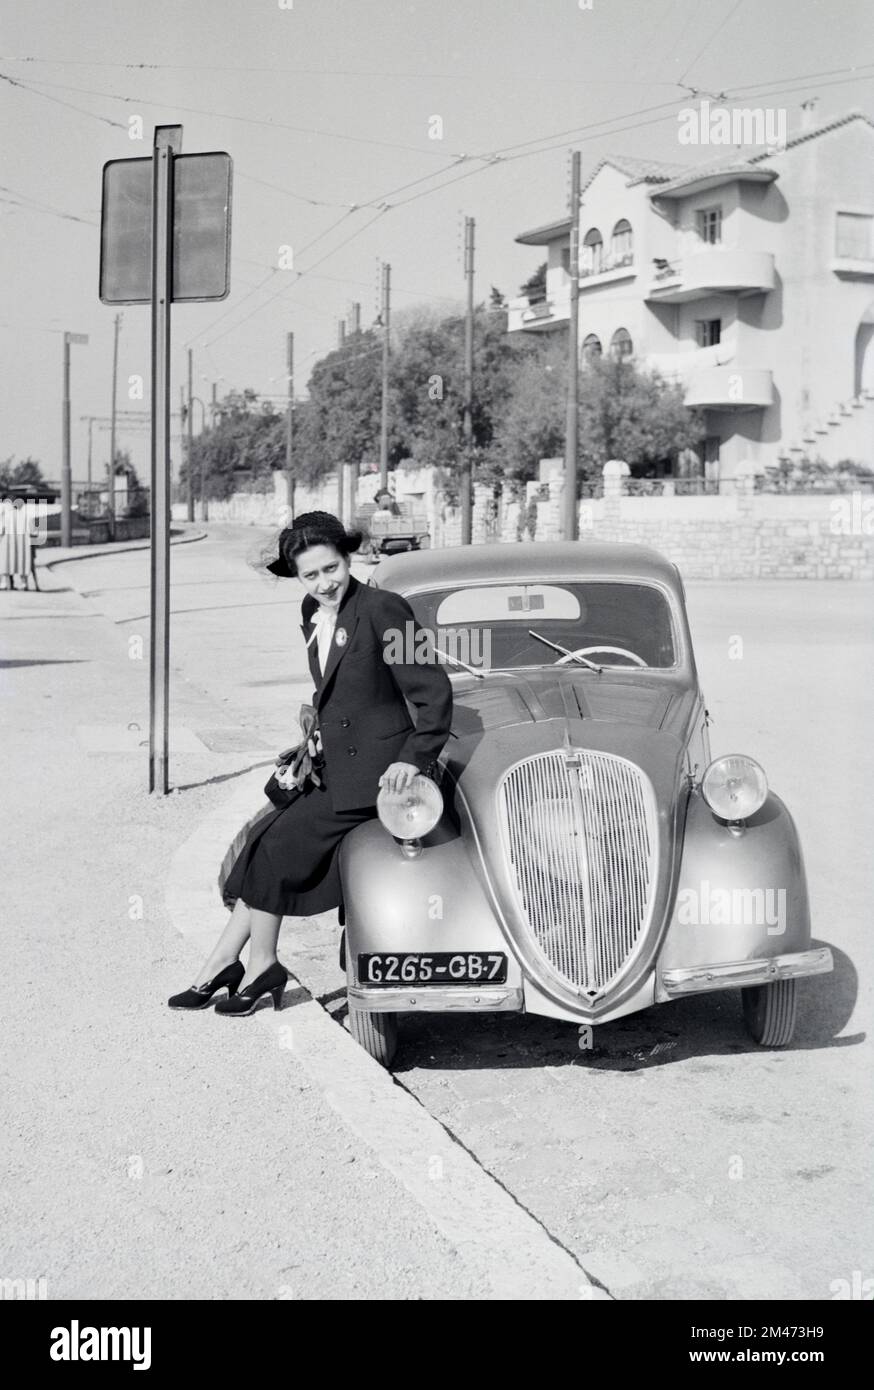 Une jeune française pose sur une berline Vintage Simca 5 2 portes fabriquée à Nanterre France entre 1836 et 1948. La voiture franco-italienne était identique à la Fiat 500 Topolina. Photographié à Toulon en 1950 Banque D'Images